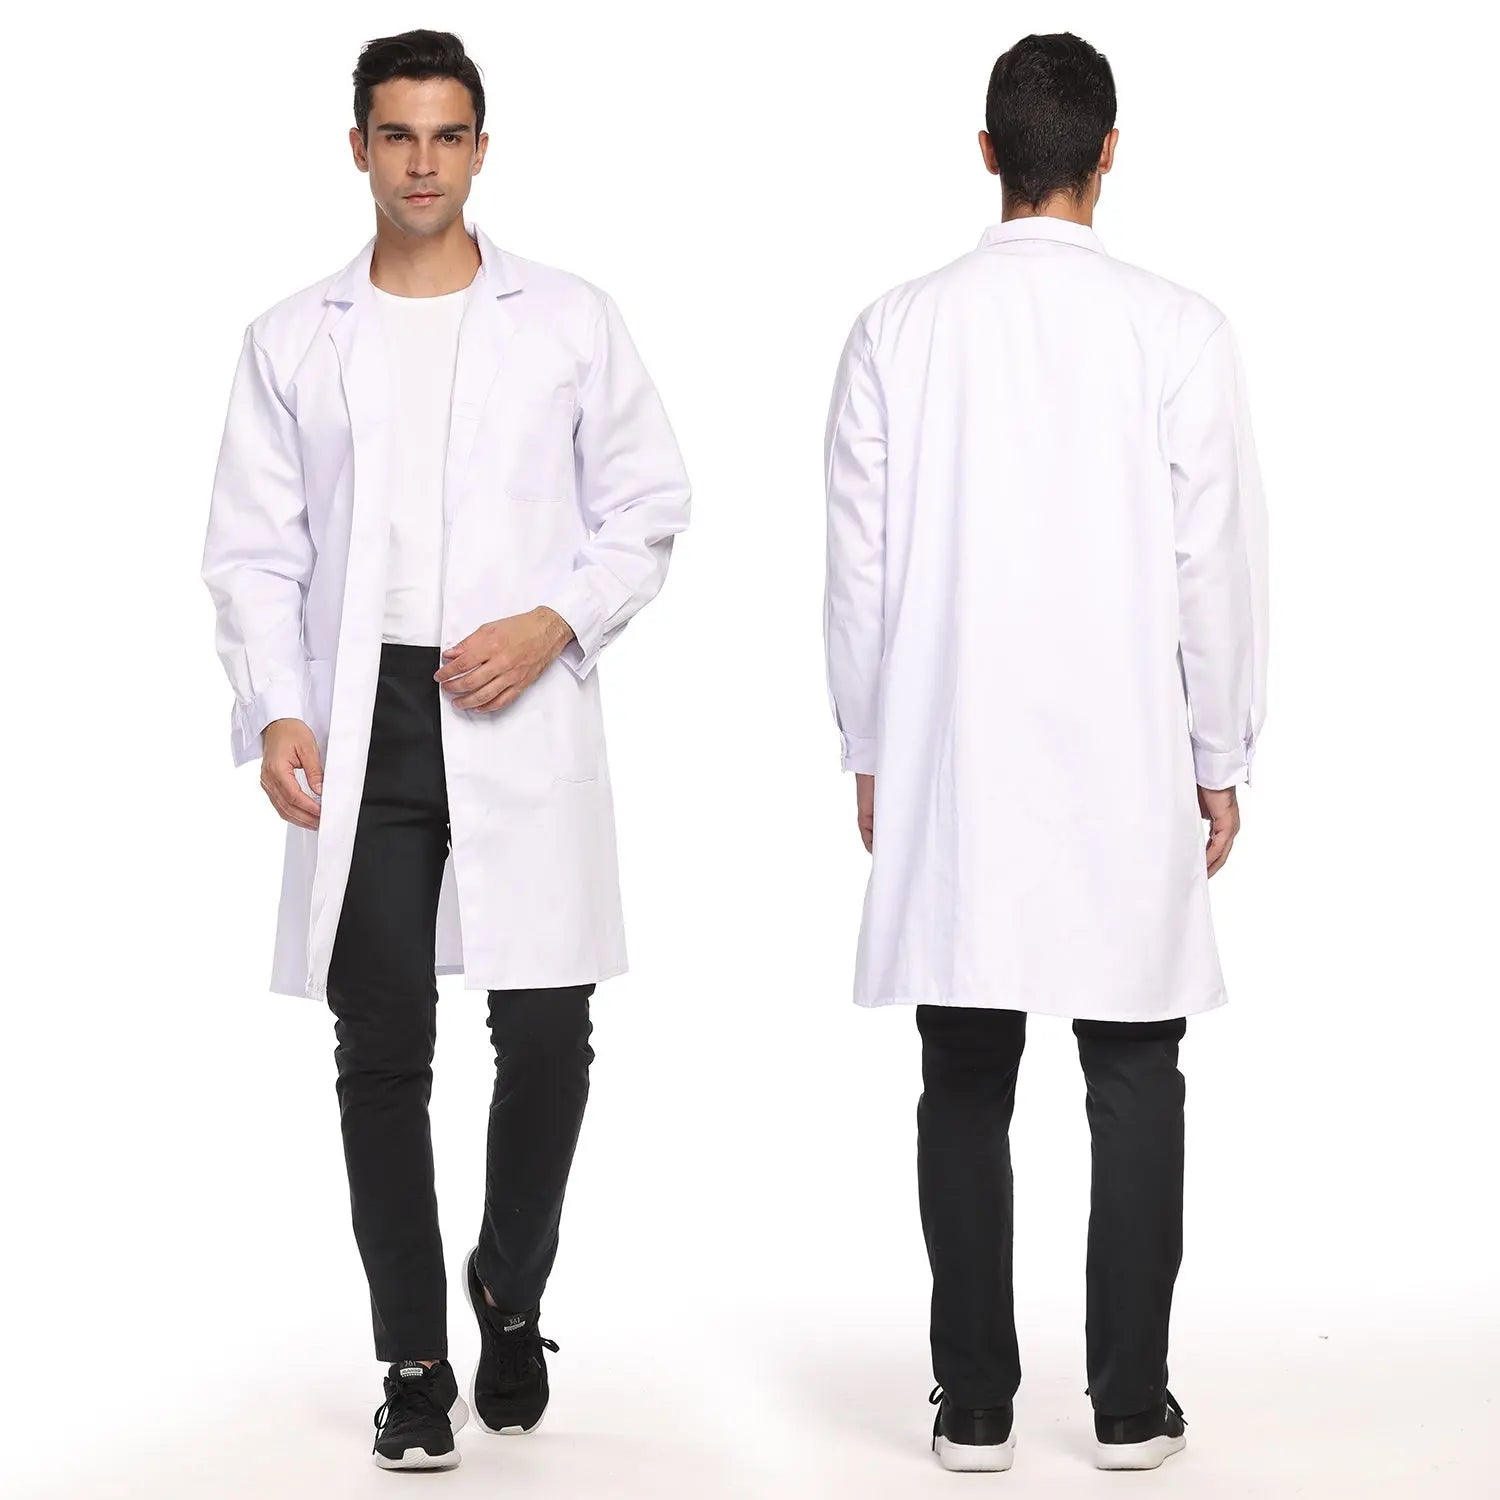 Unisex Lab Coat, Professional Full Length 3 Pocket Long Sleeve Laboratory Coat - StonyLab Lab Protections 